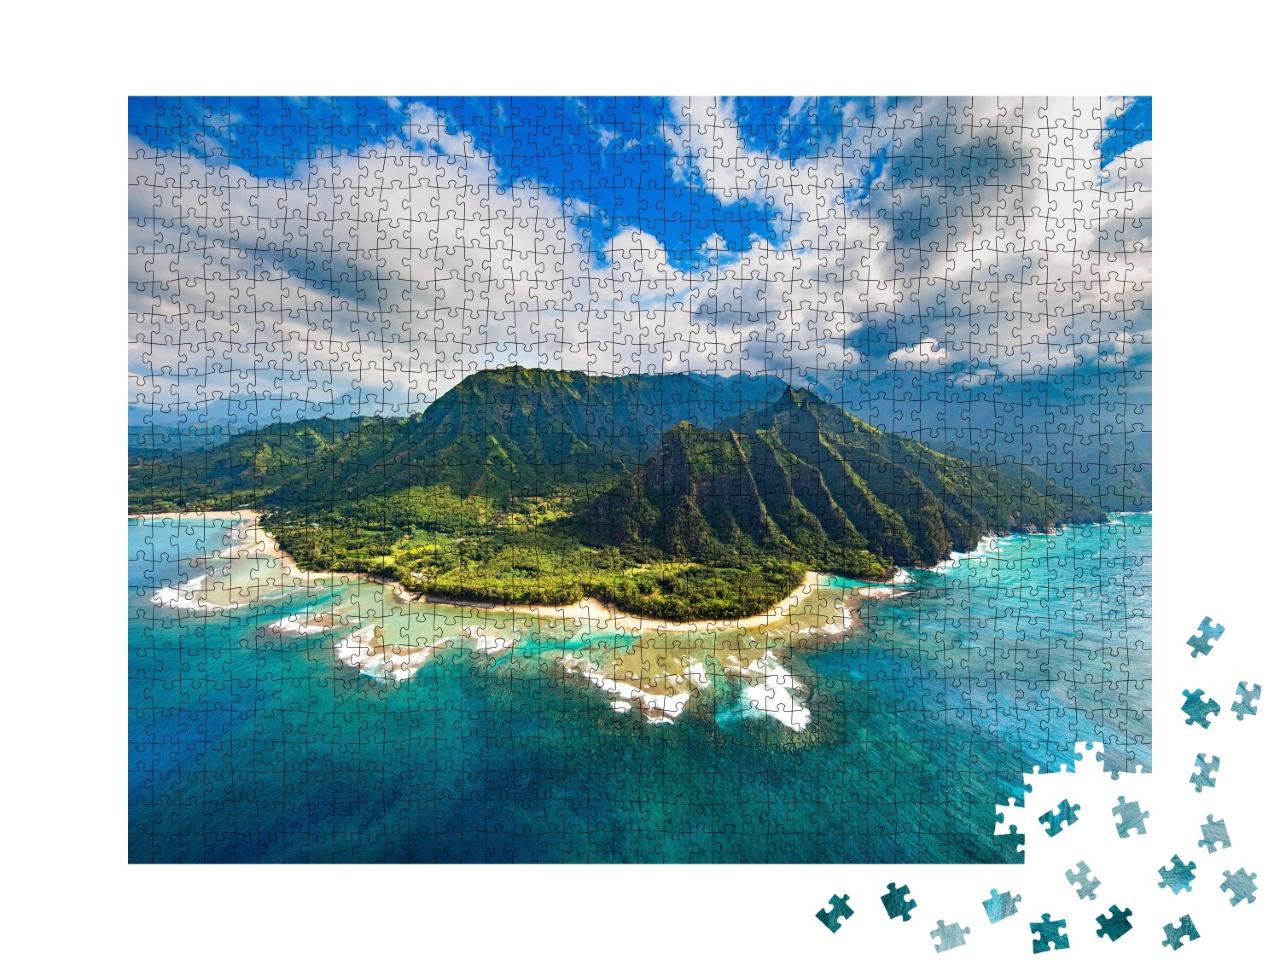 Puzzle de 1000 pièces « Côte Na Pali, Kauai »